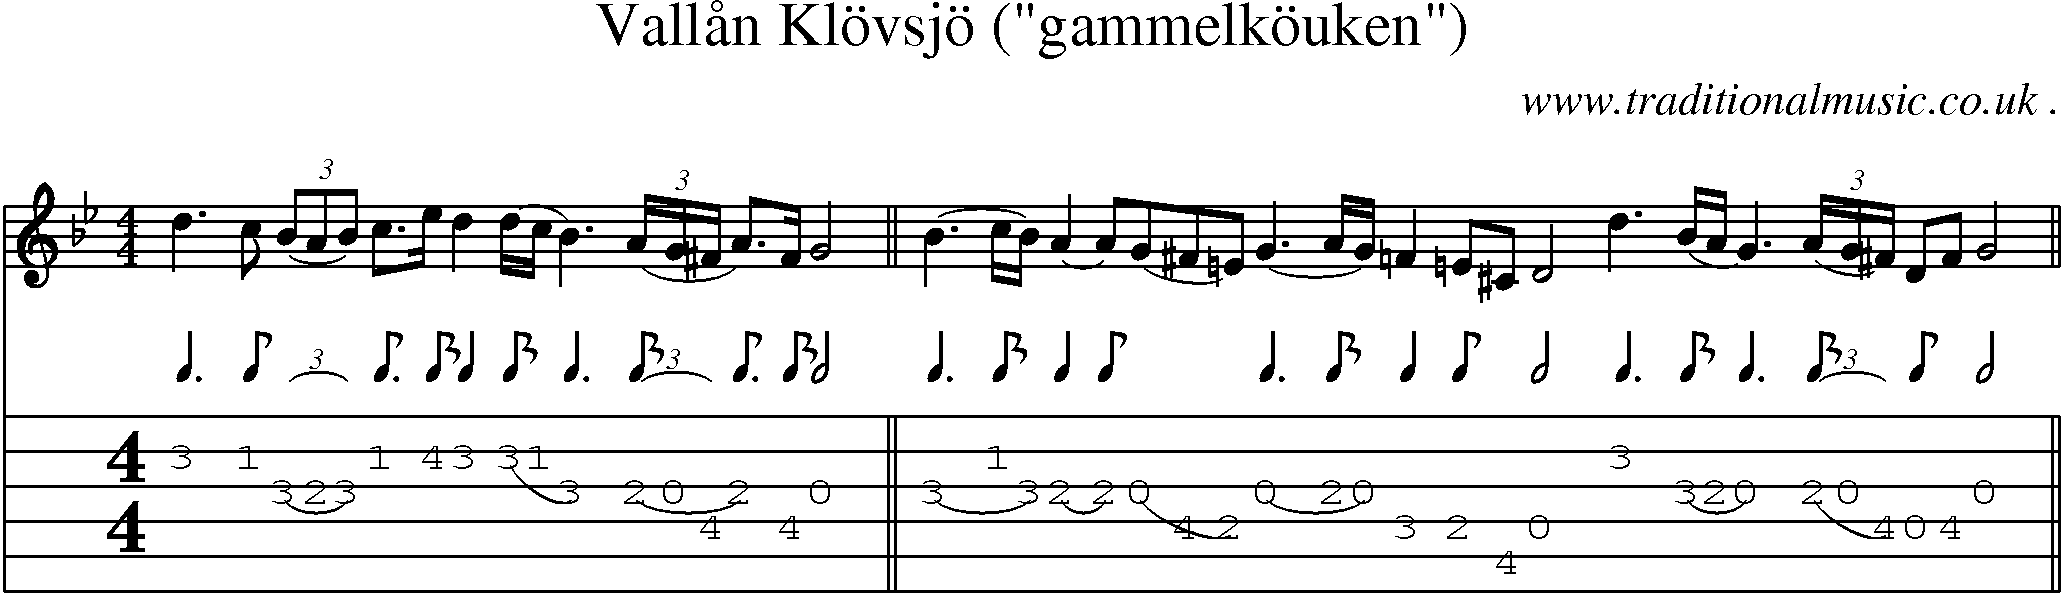 Sheet-Music and Guitar Tabs for Vallaan Klovsjo (gammelkouken)